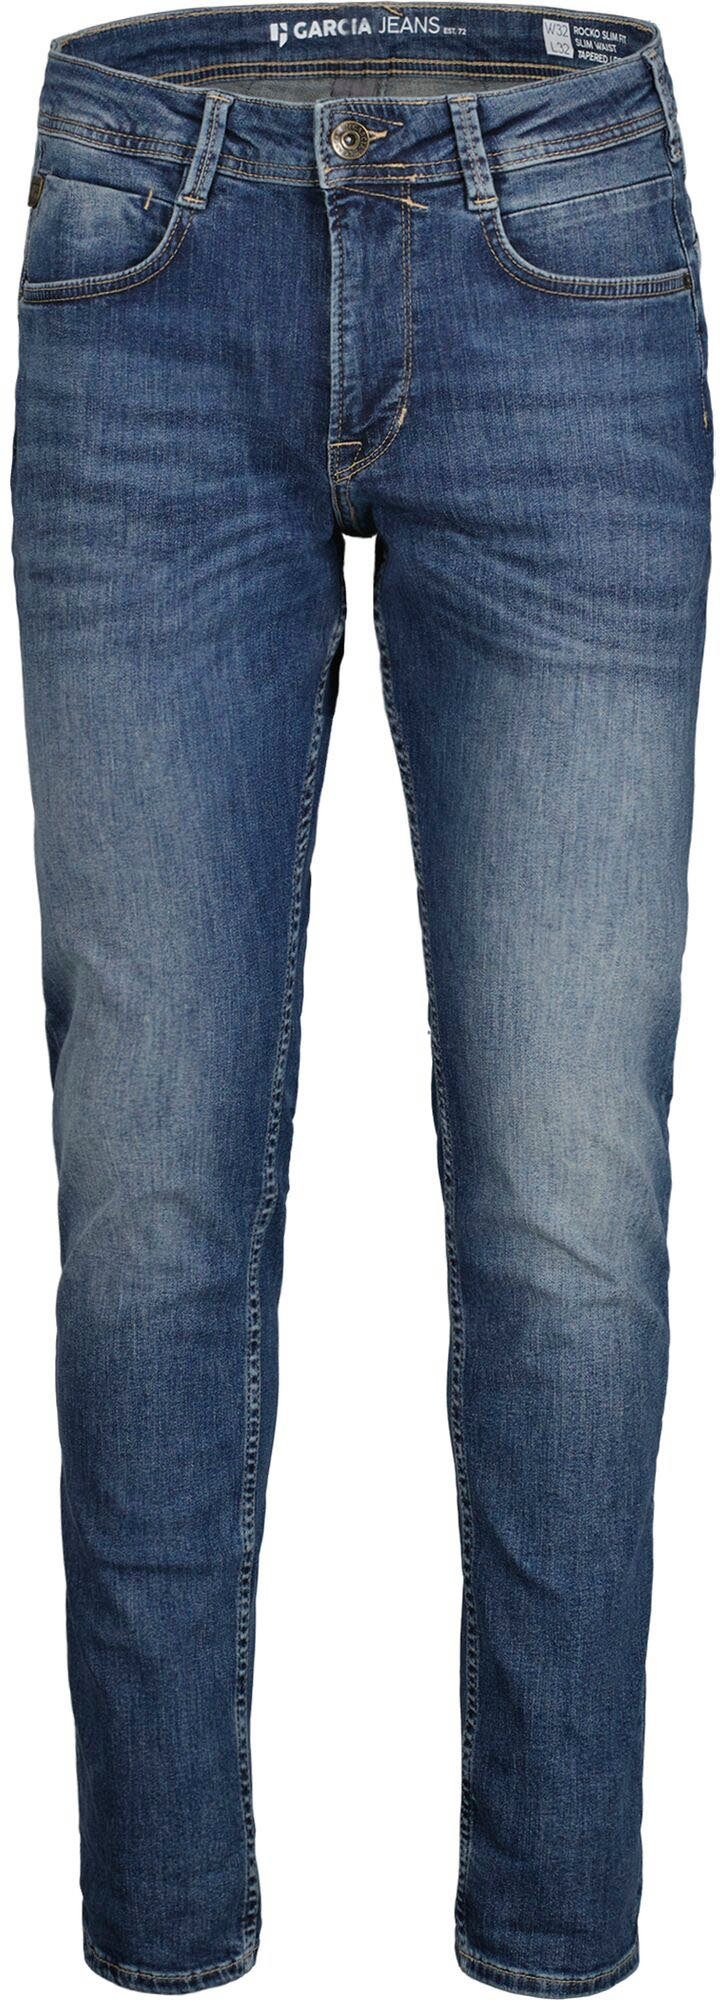 Rocko verschiedenen in used Waschungen 5-Pocket-Jeans medium Garcia